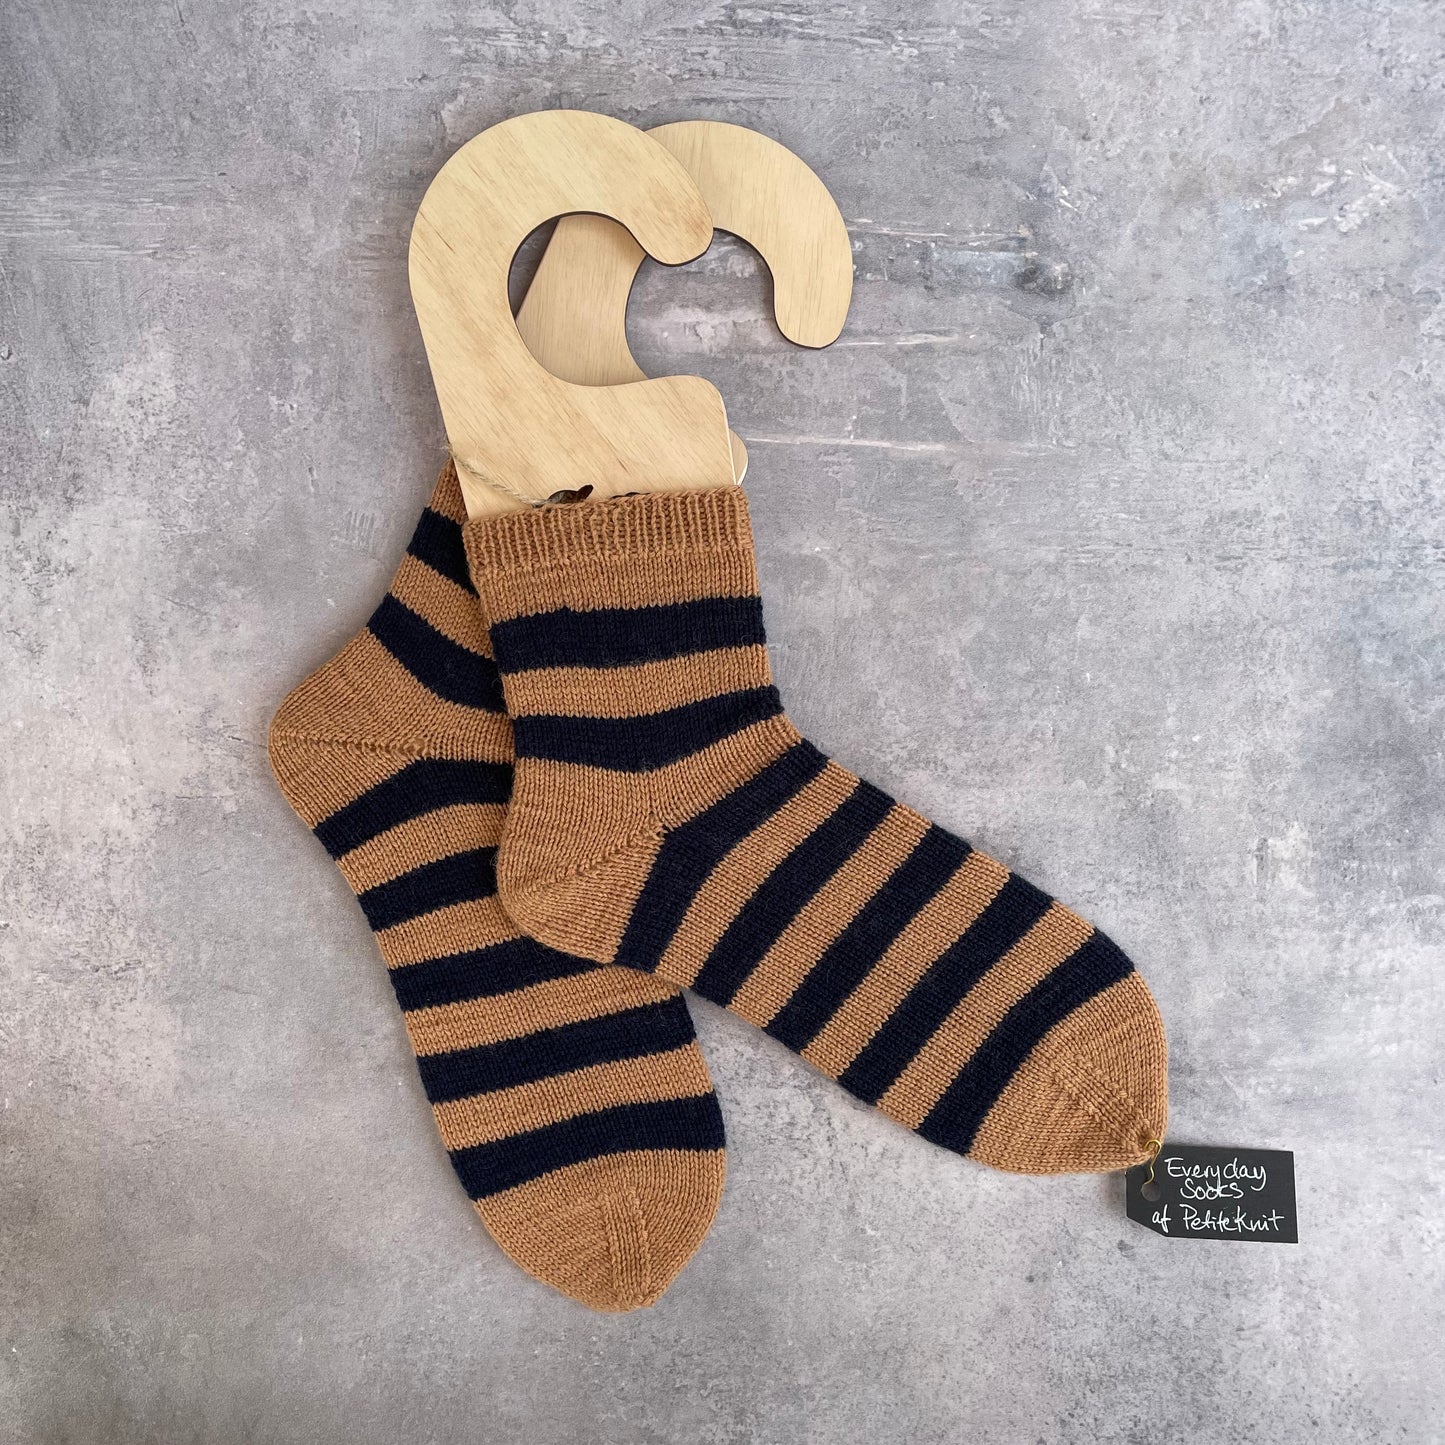 Sokkeblokkere til dine hjemmestrikkede strømper og sokker